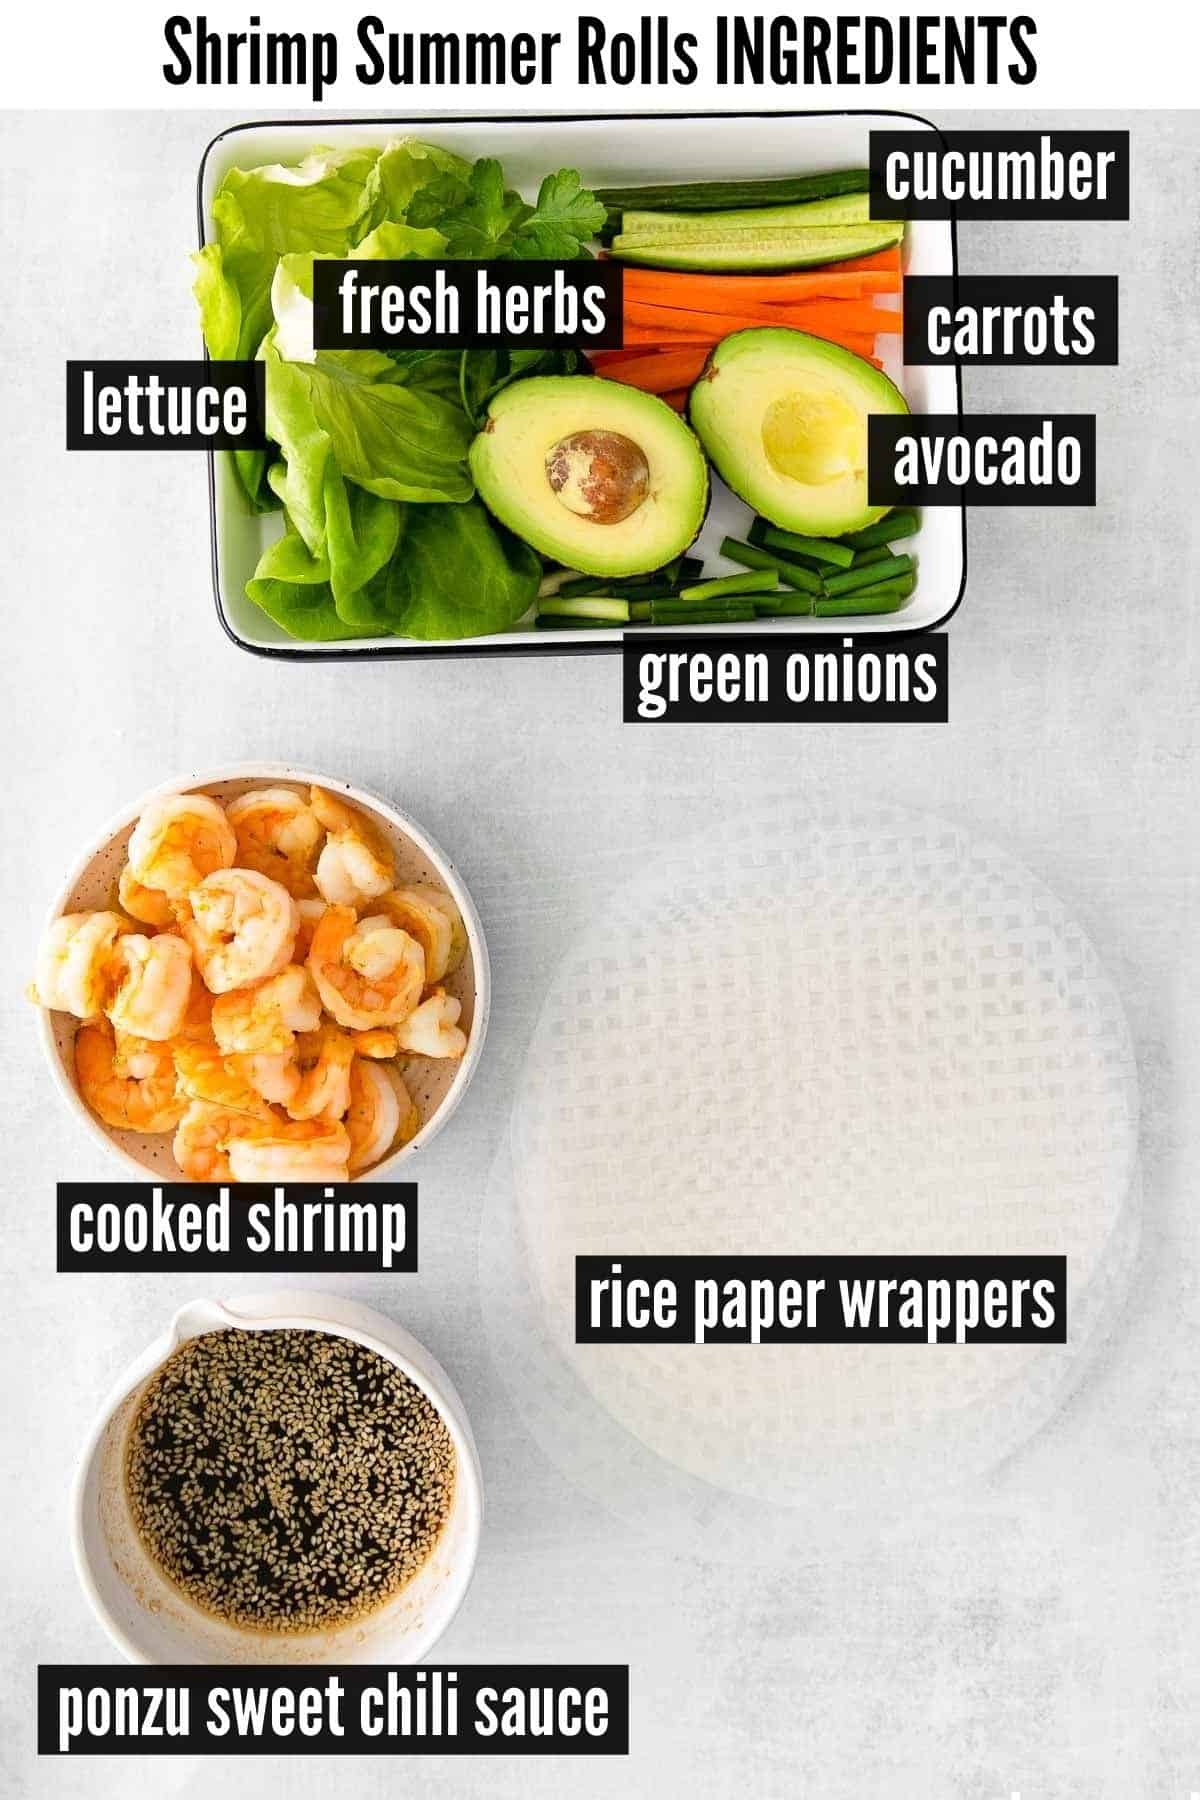 shrimp summer rolls labelled ingredients